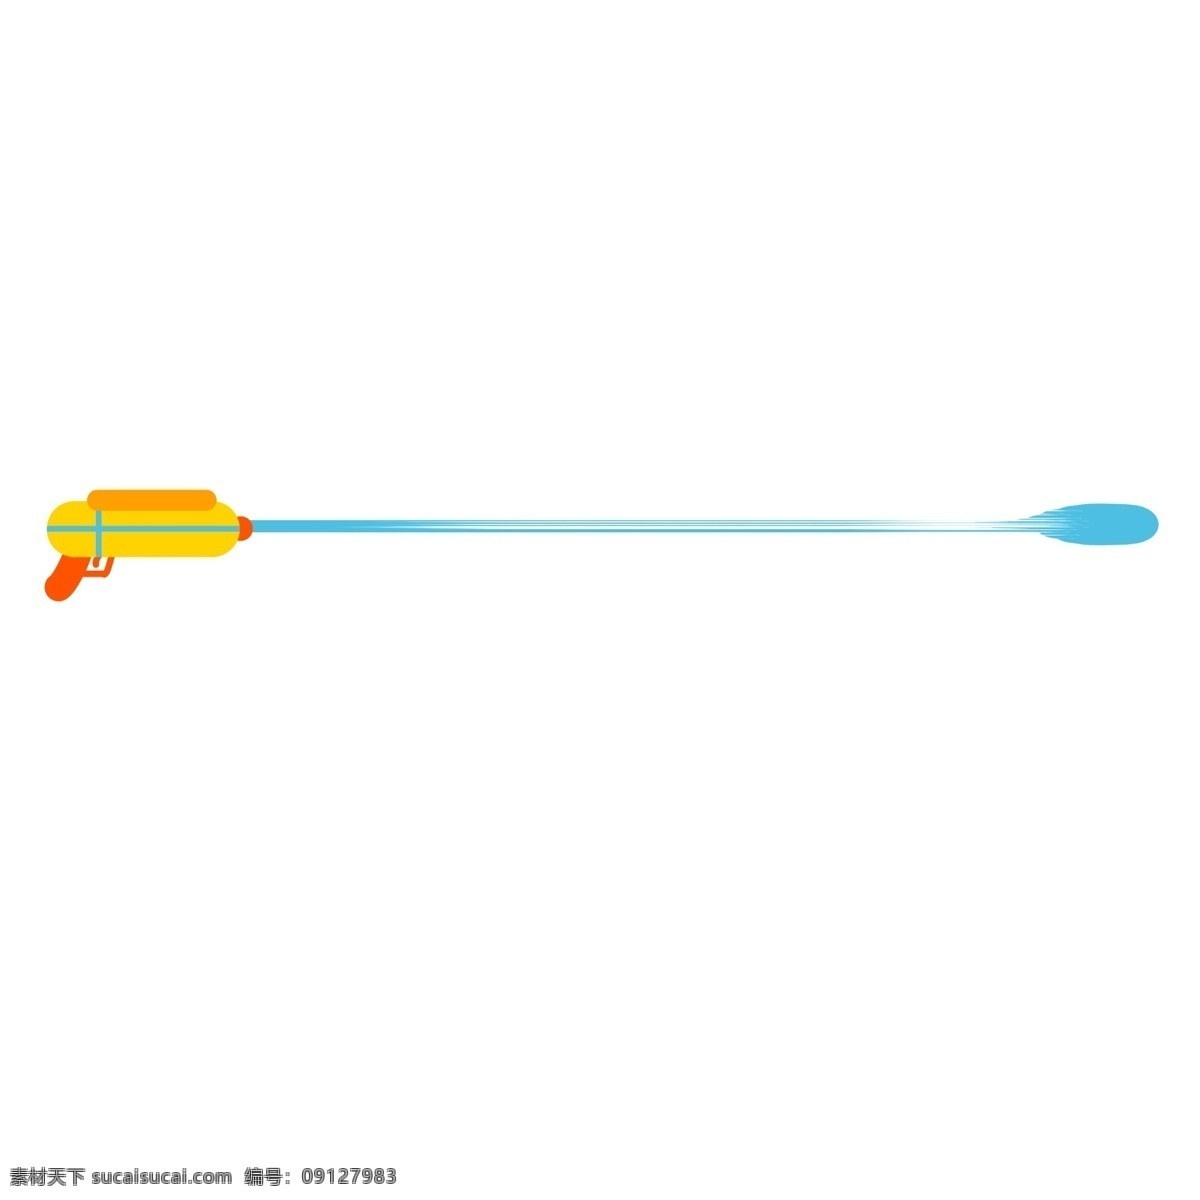 水枪 分割线 手绘 插画 水枪分割线 黄色的分割线 蓝色的水滴 漂亮的分割线 玩具分割线 手绘分割线